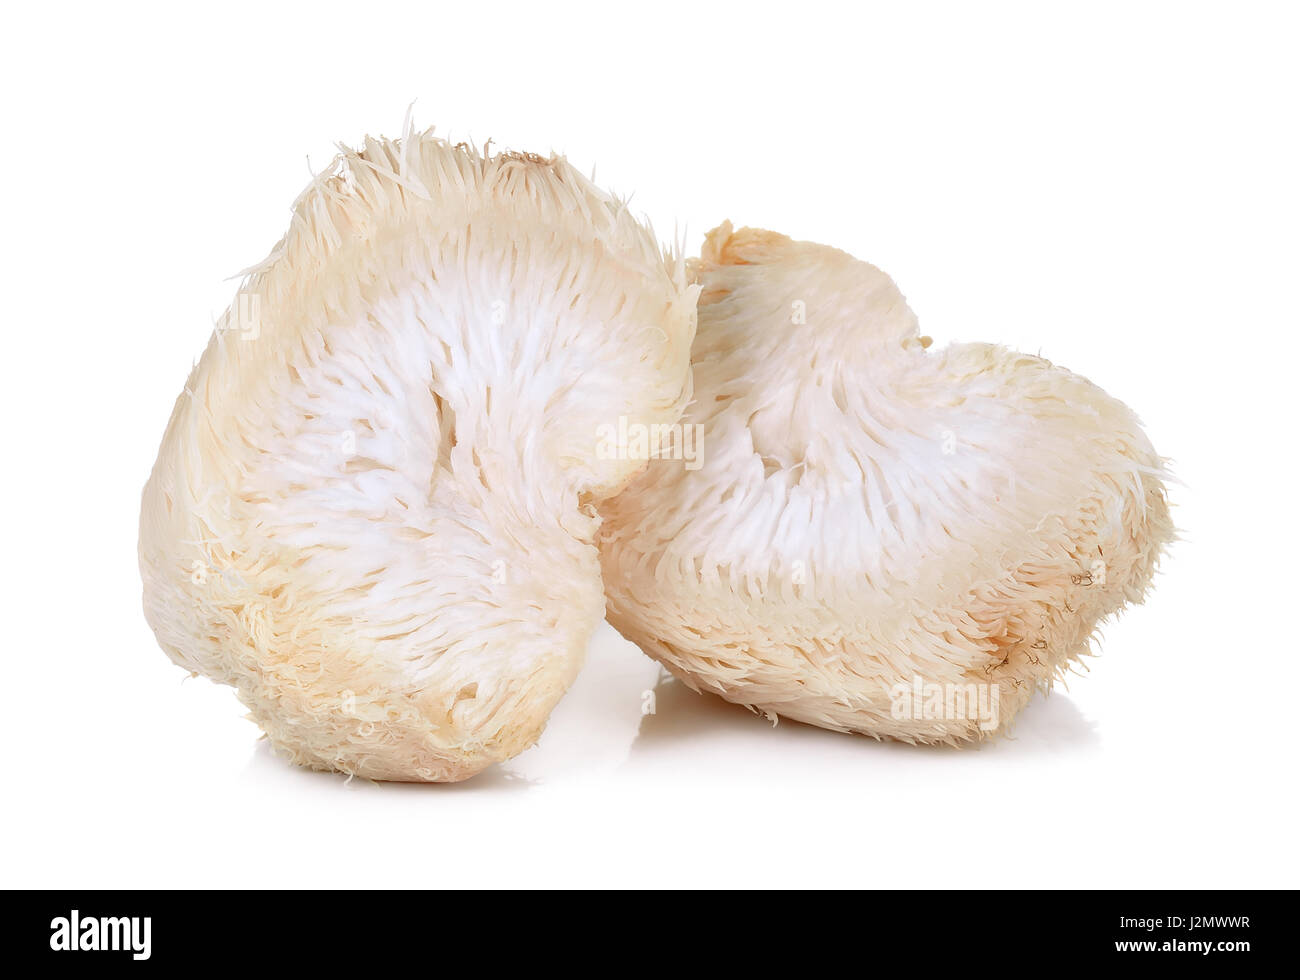 Lion mane mushroom isolated on white background. Stock Photo